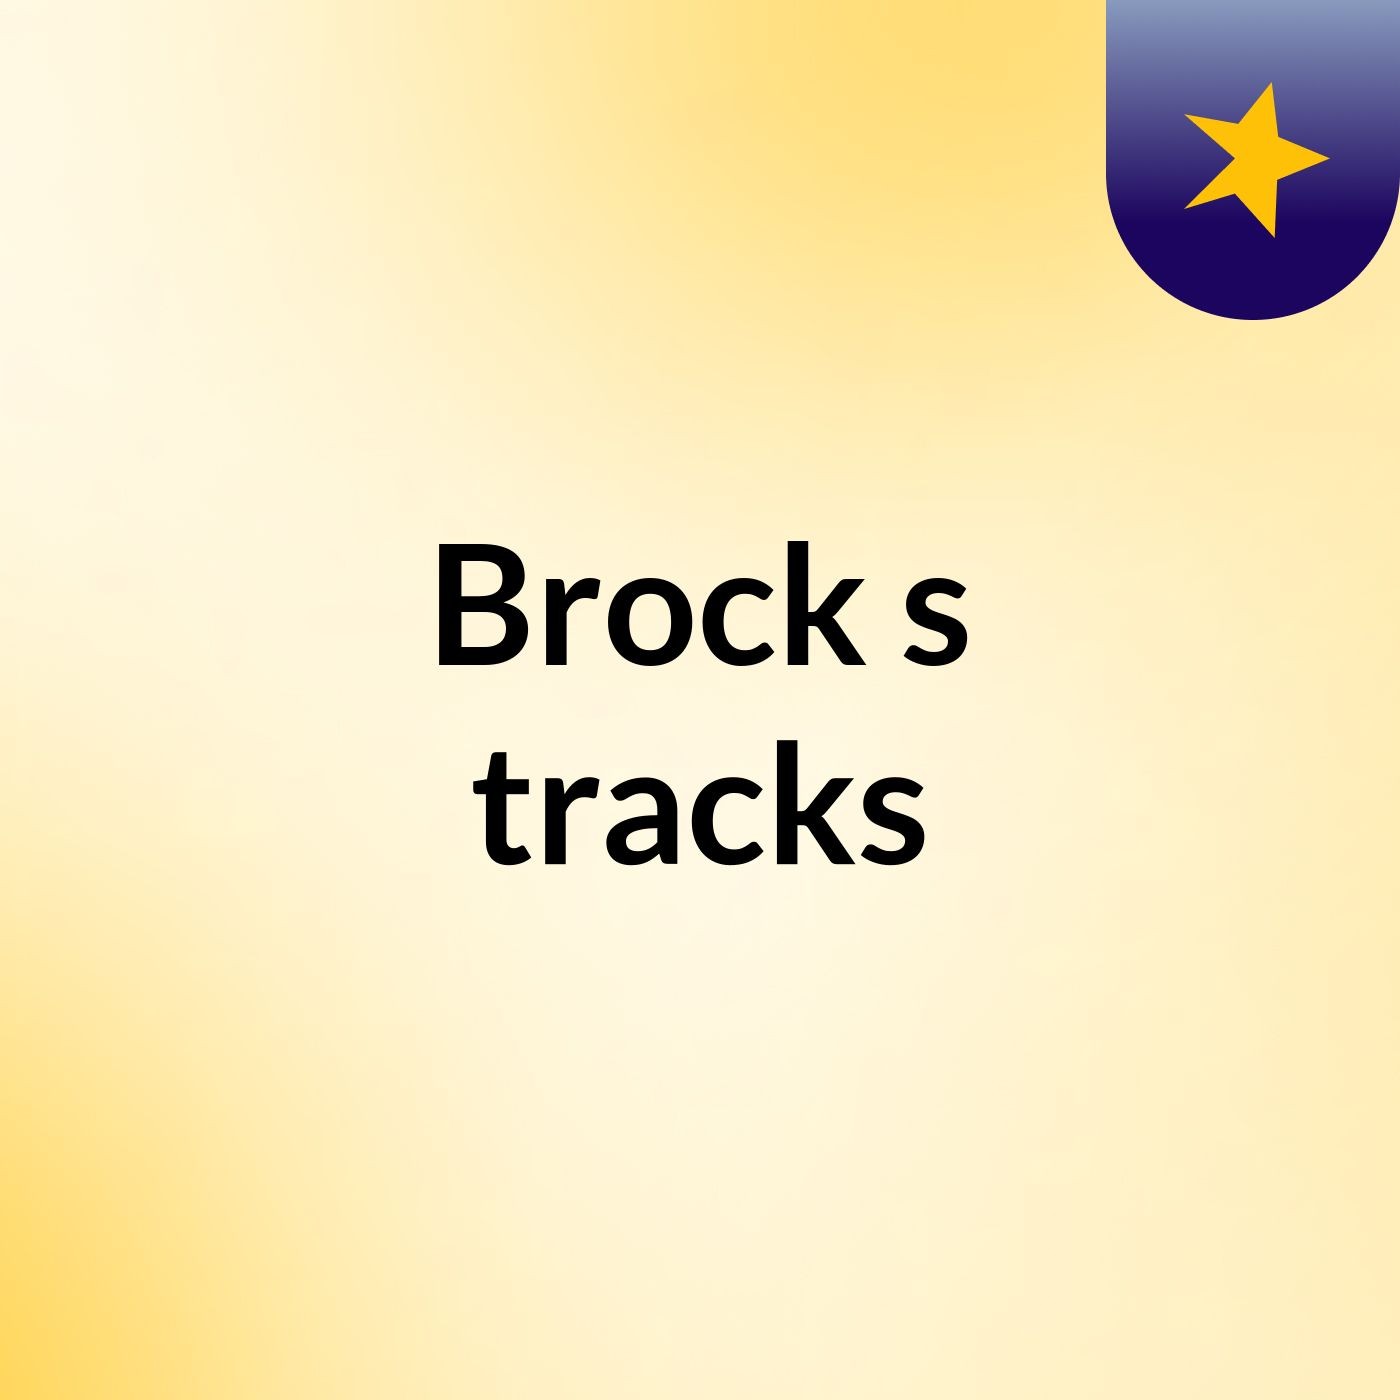 Brock's tracks